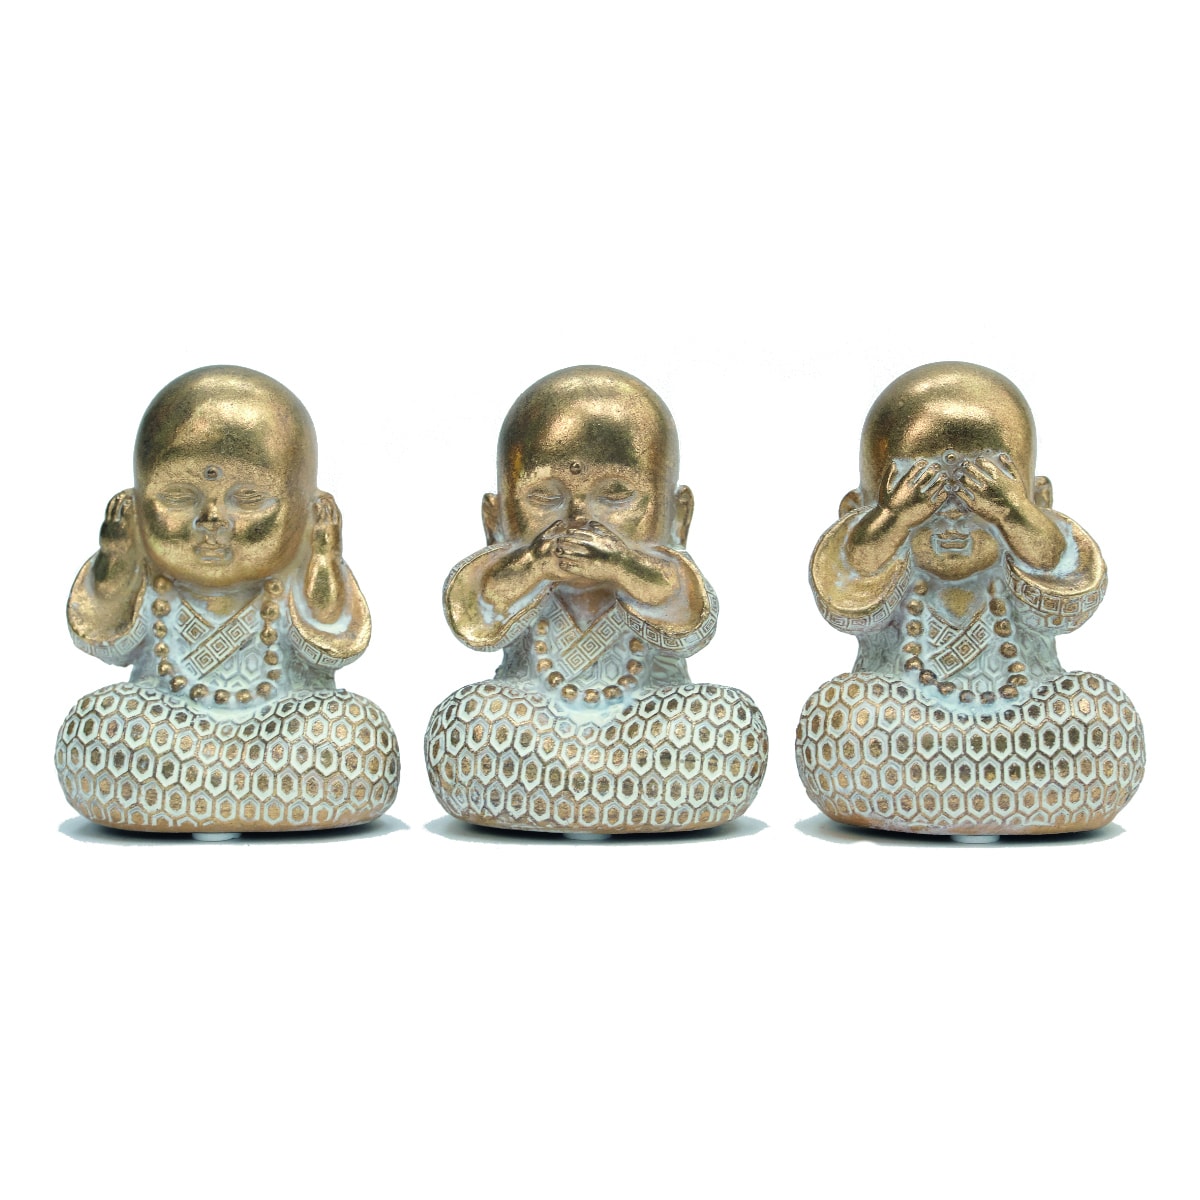 Three Wise Baby Buddhas